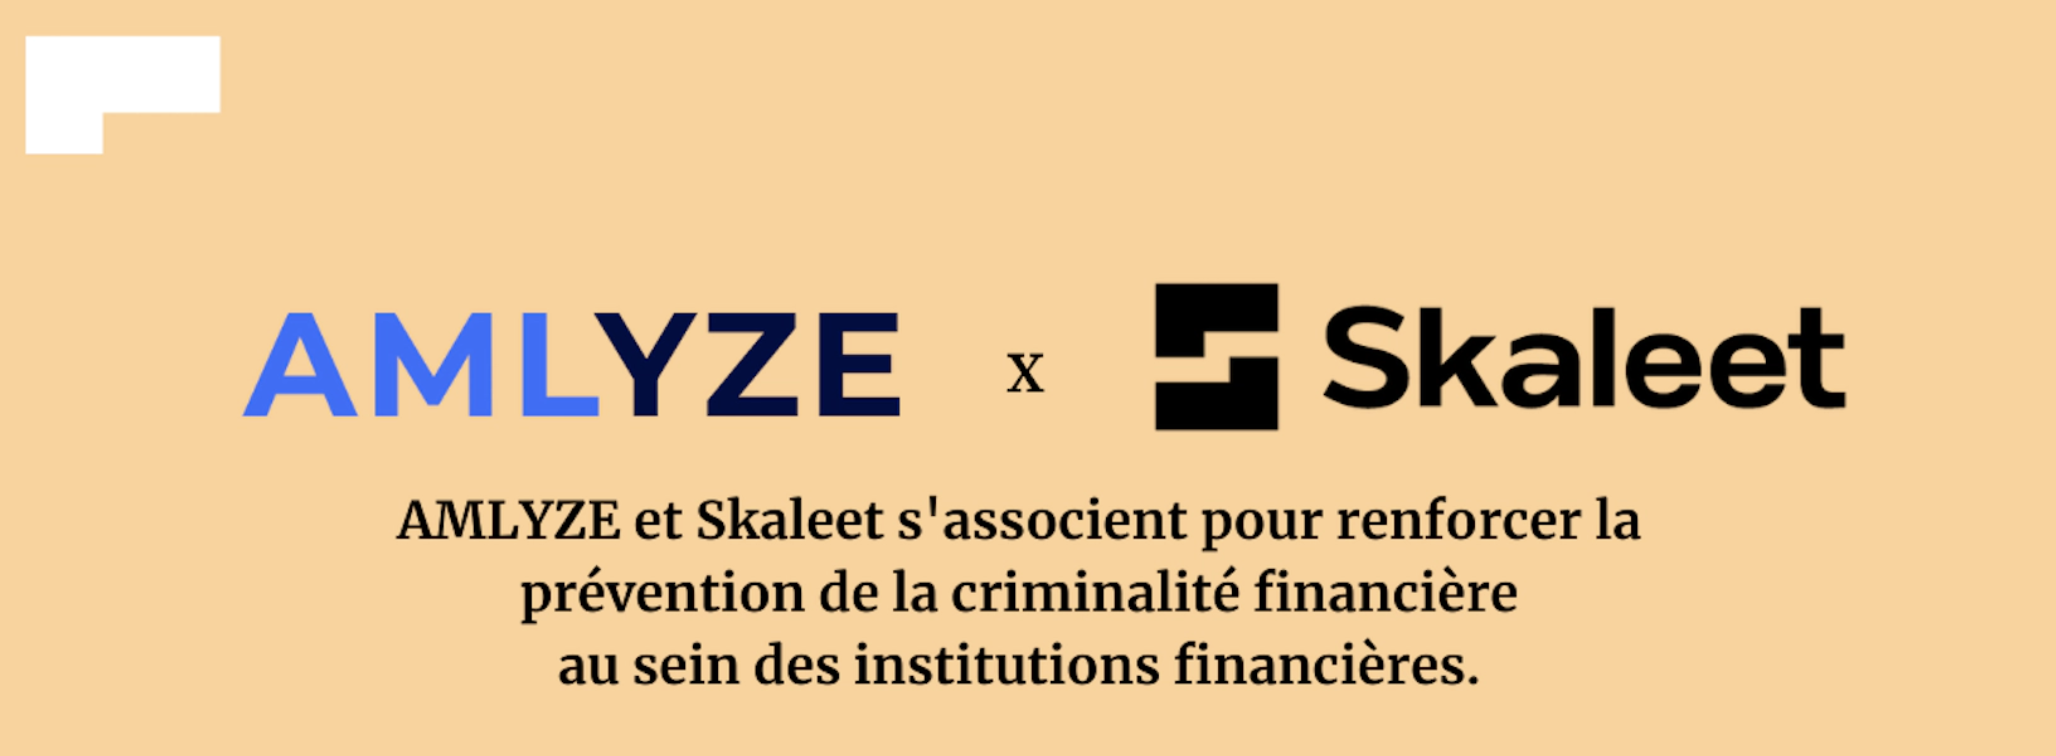 AMLYZE et Skaleet s’associent pour renforcer la prévention de la criminalité financière au sein des institutions financières